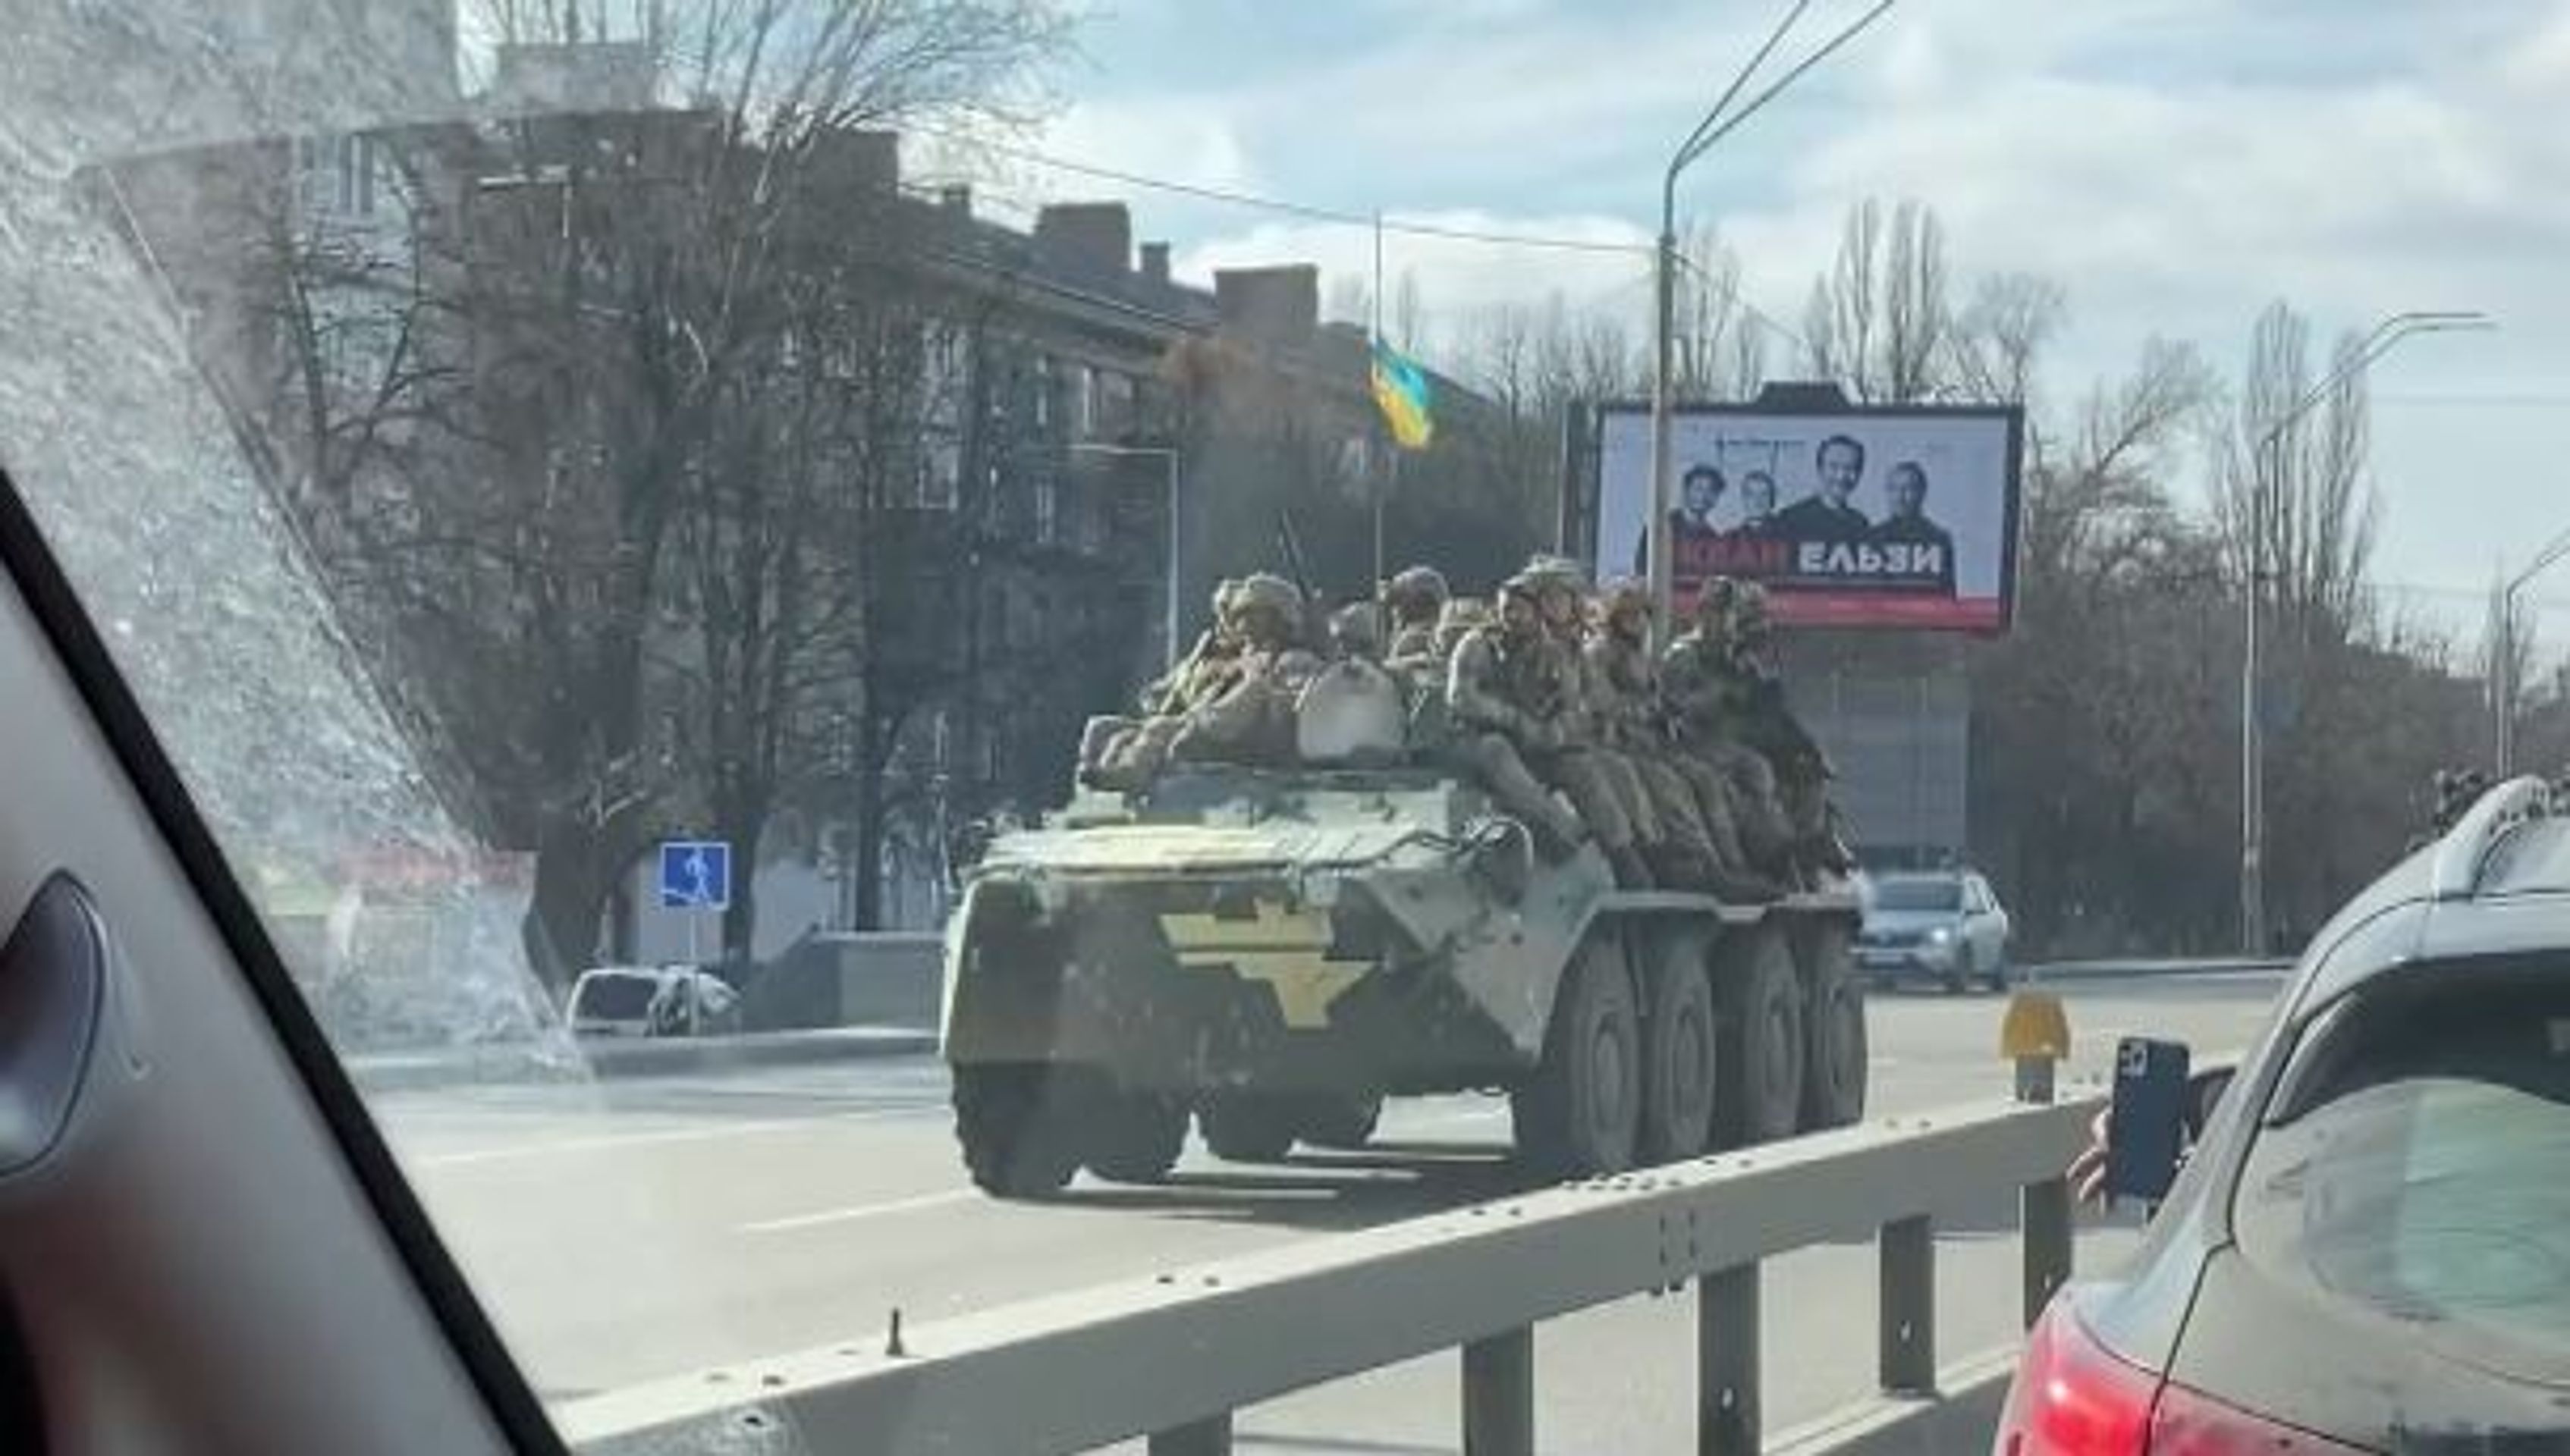 Ukrajinská armáda stěhuje konvoj - Druhý den války na Ukrajině (7/24)